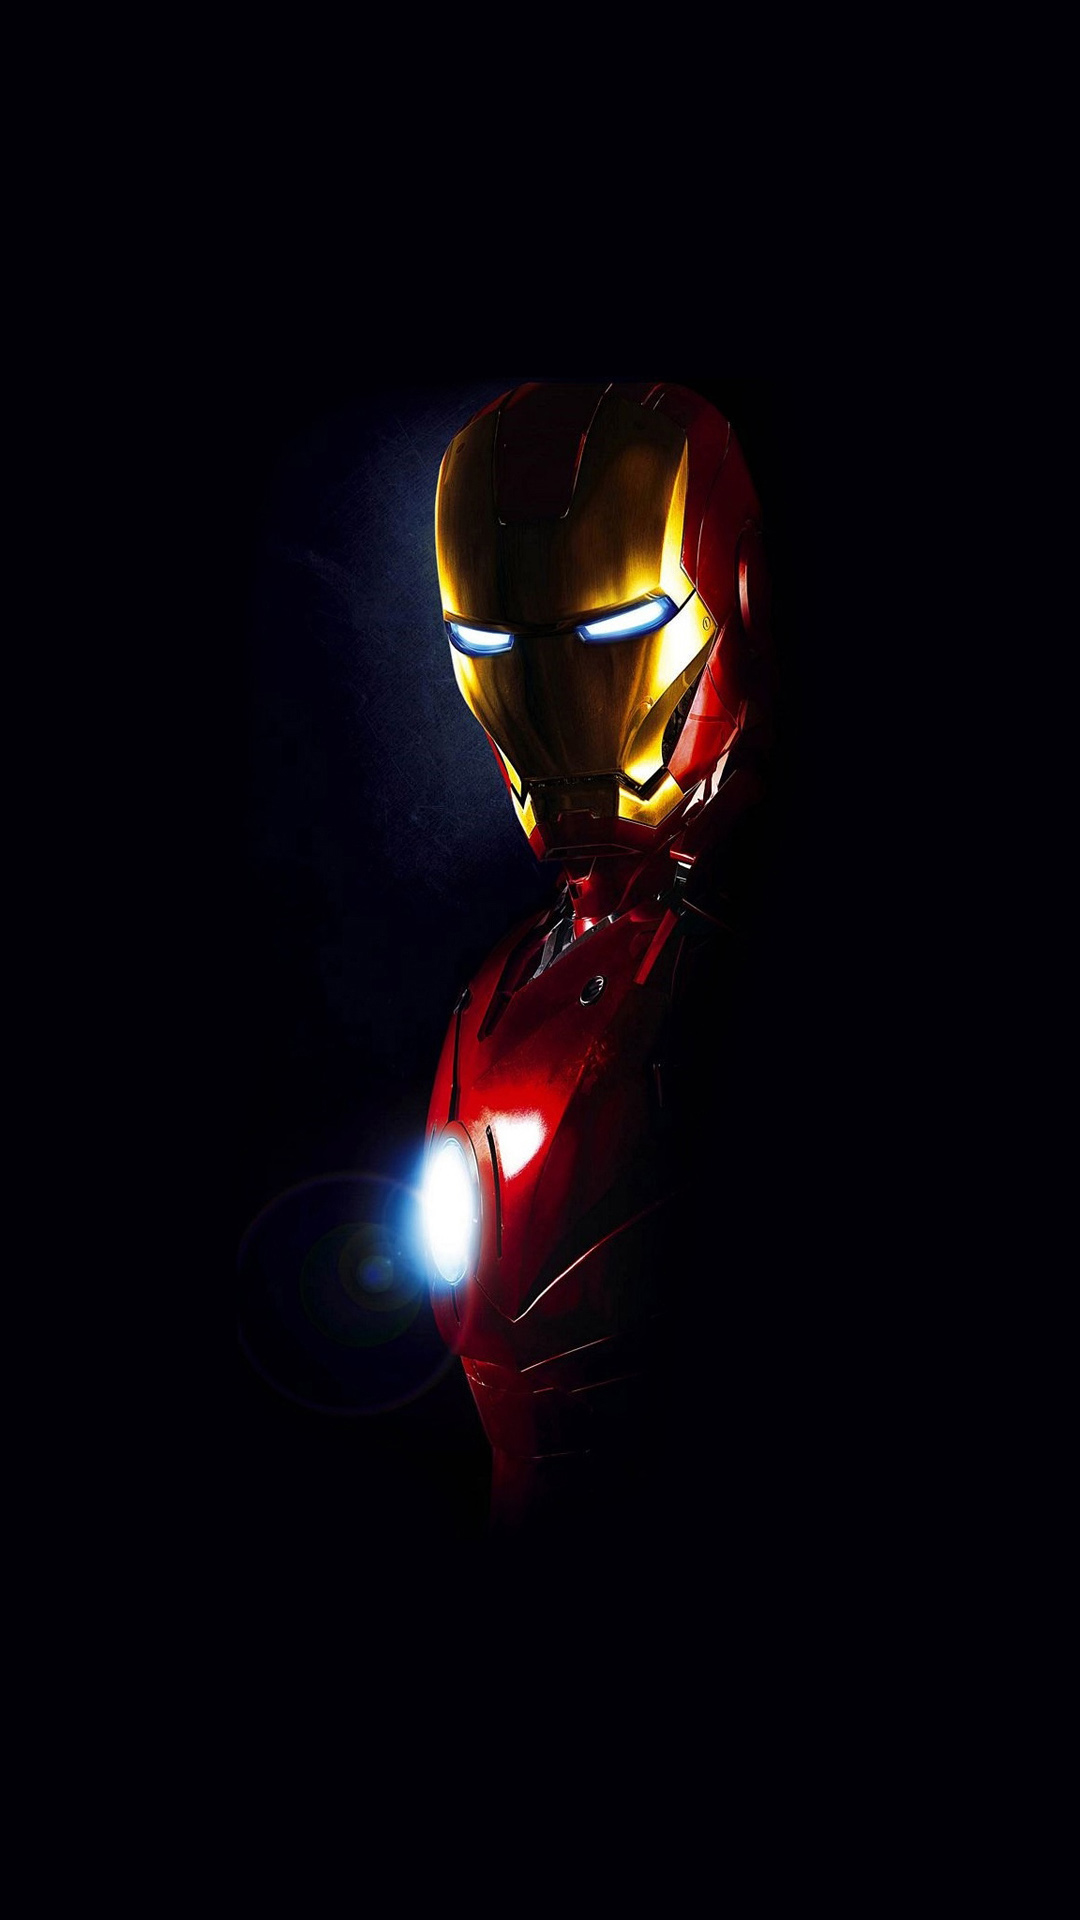 iron man wallpaper per android,leggero,rosso,buio,illuminazione,casco